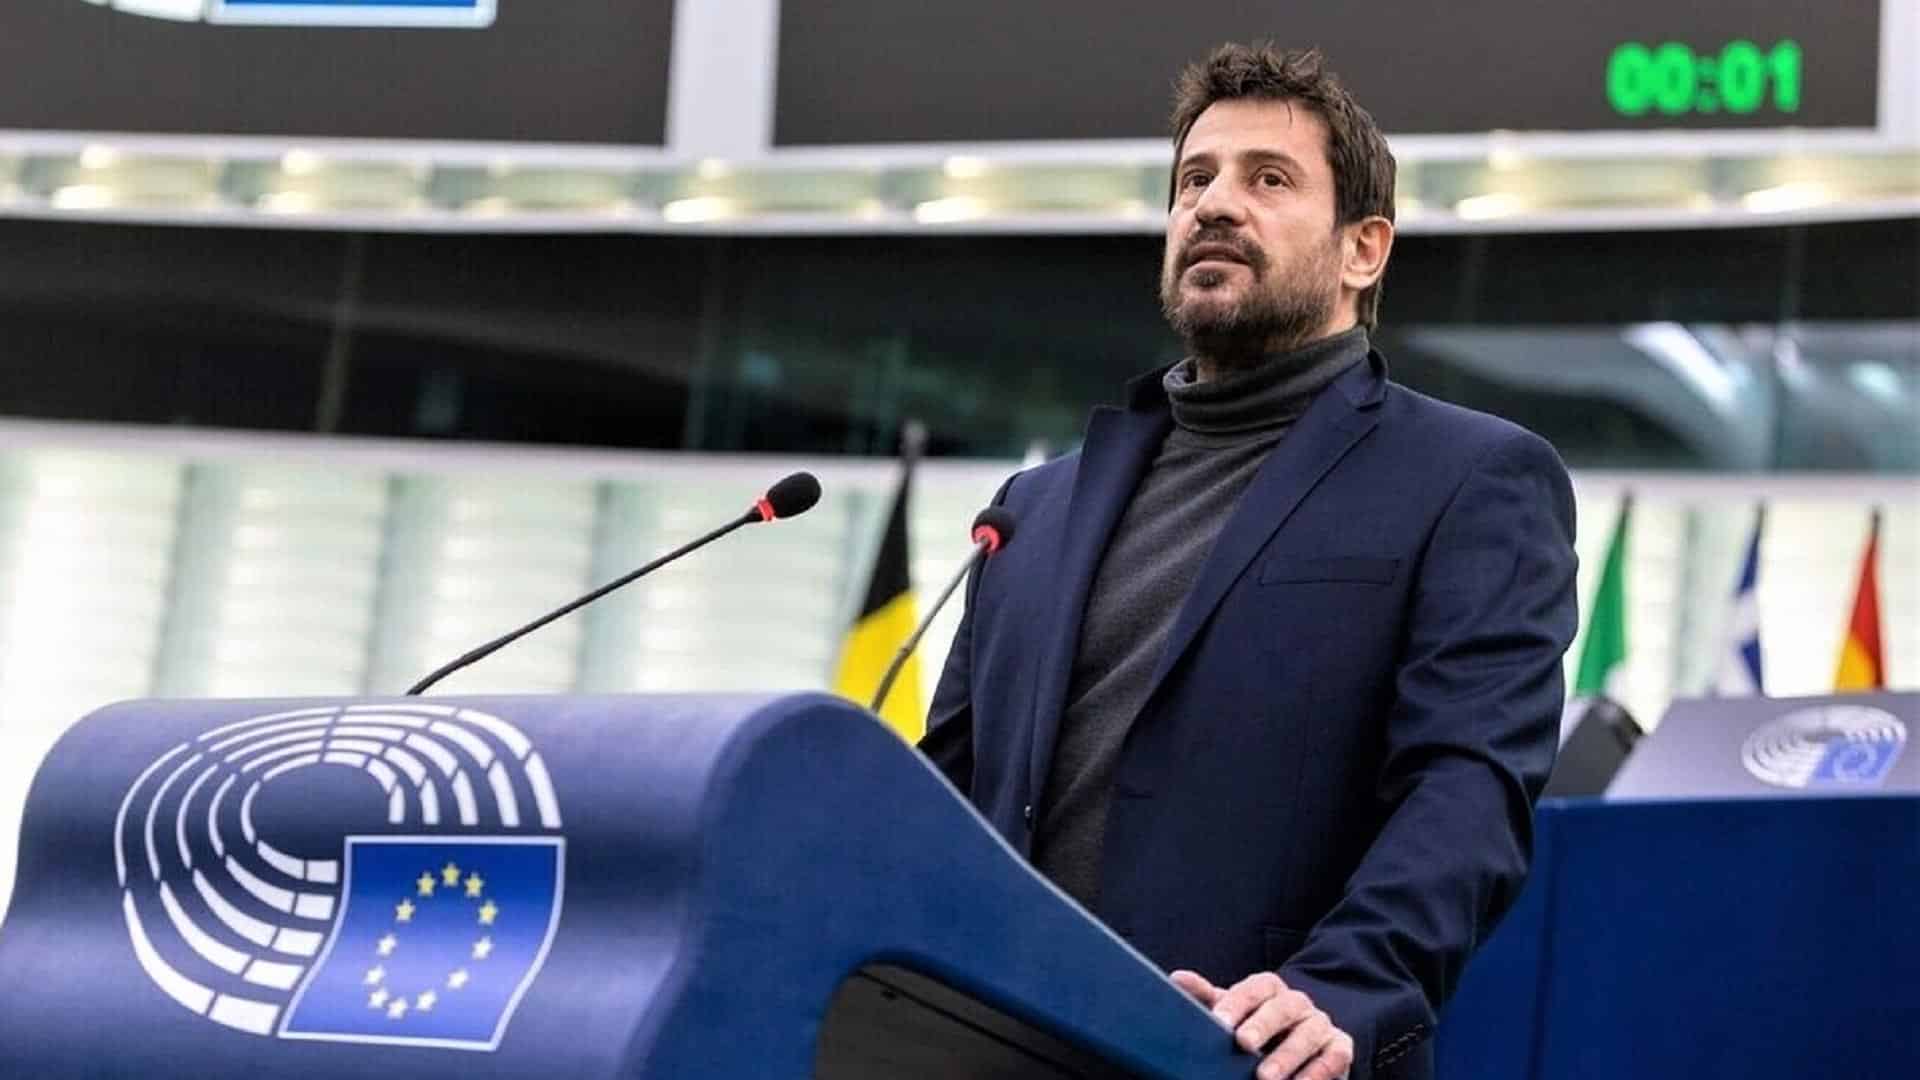 Αλέξης Γεωργούλης: Η πρώτη εμφάνισή του στο ευρωκοινοβούλιο μετά τις καταγγελίες σε βάρος του